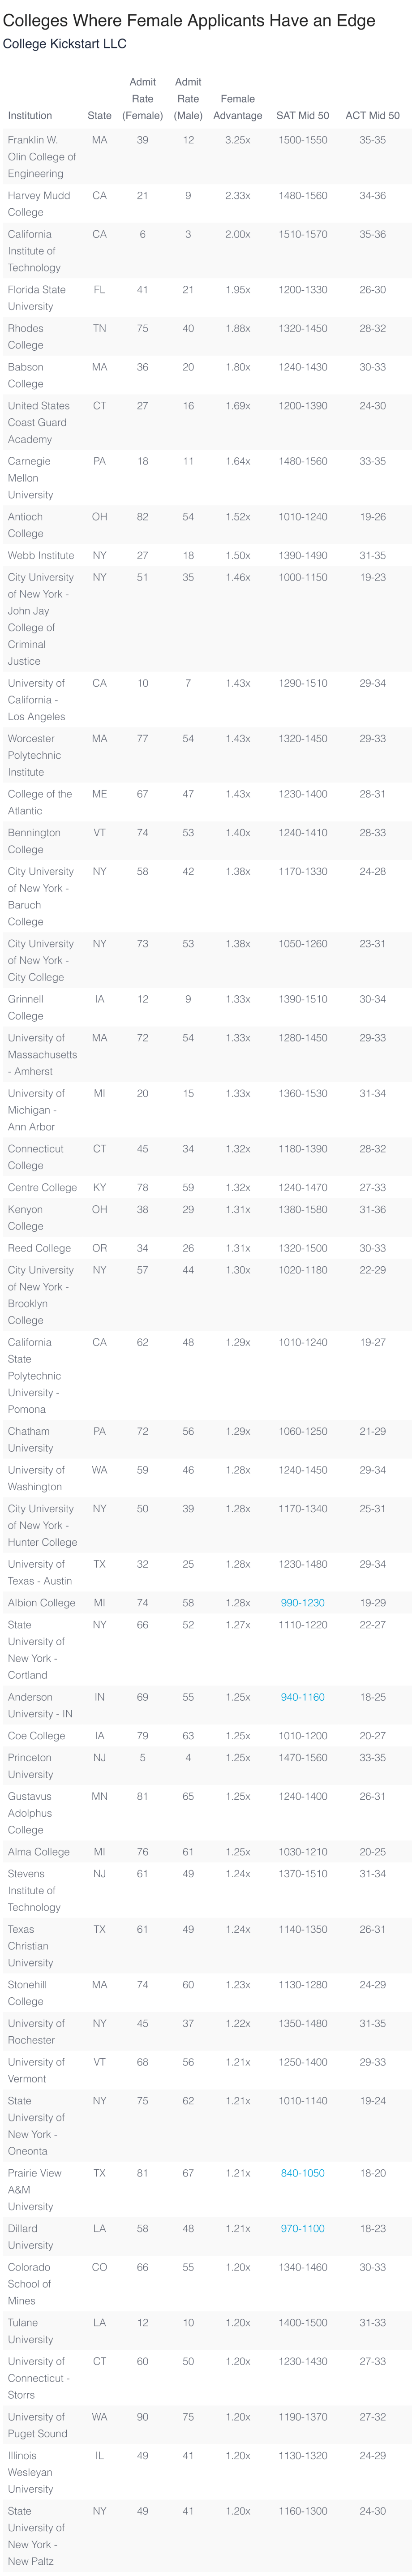 美国留学|美国TOP30大学